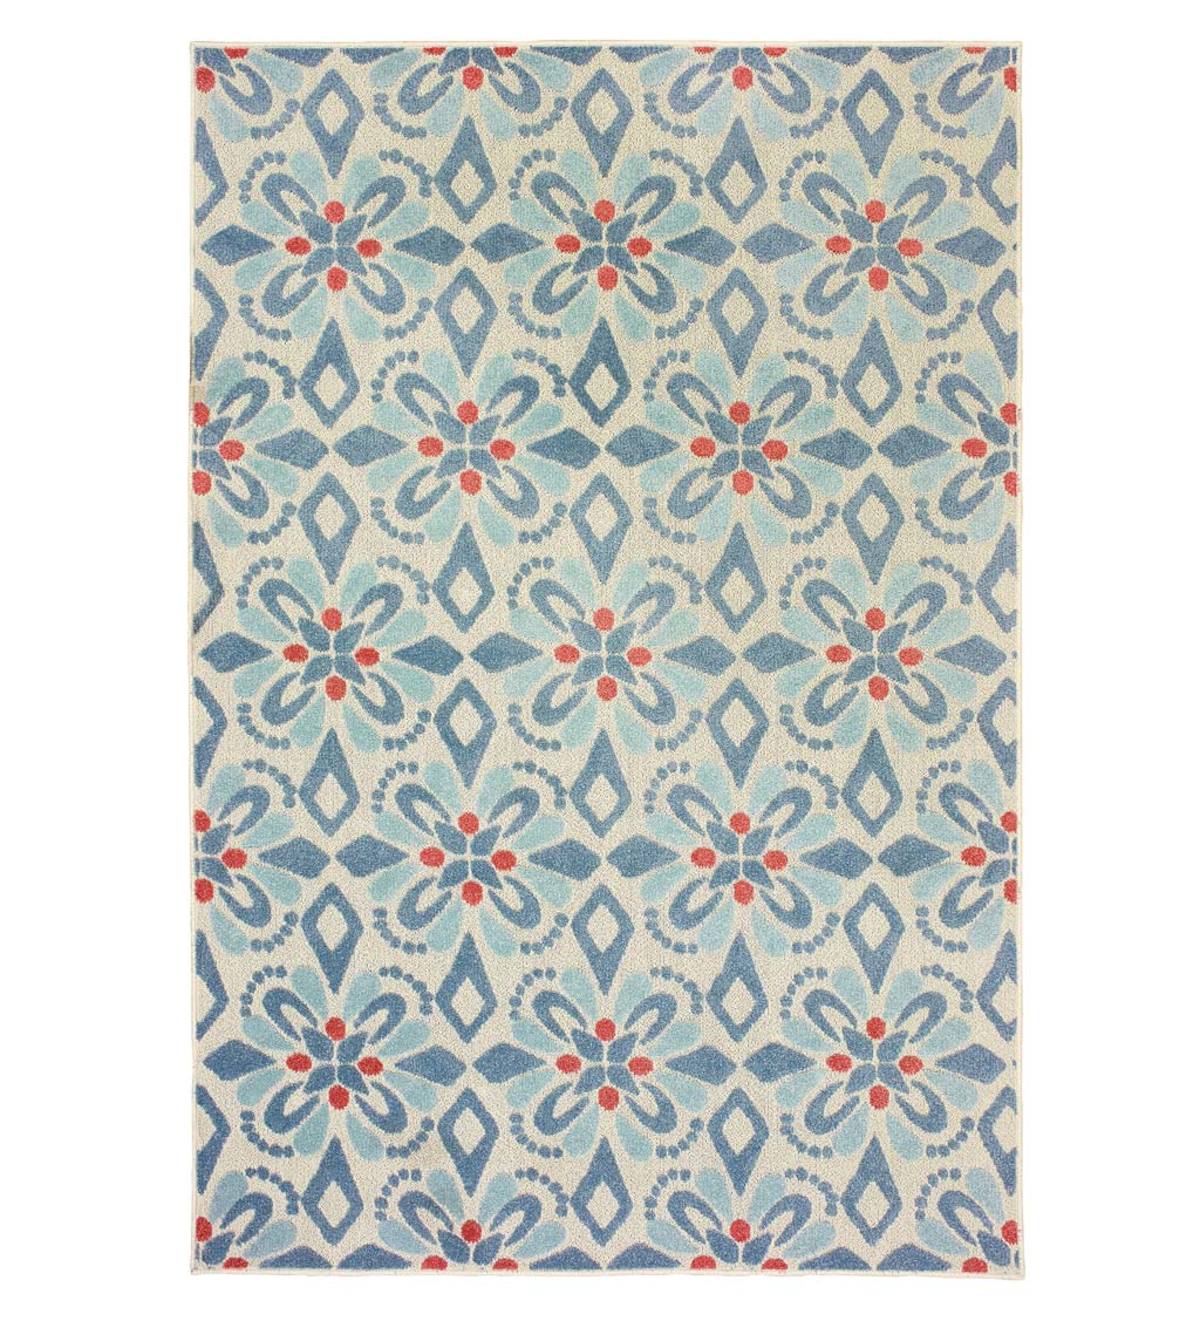 Indoor/Outdoor Clearwater Print Rug, 3' x 5' - Blue